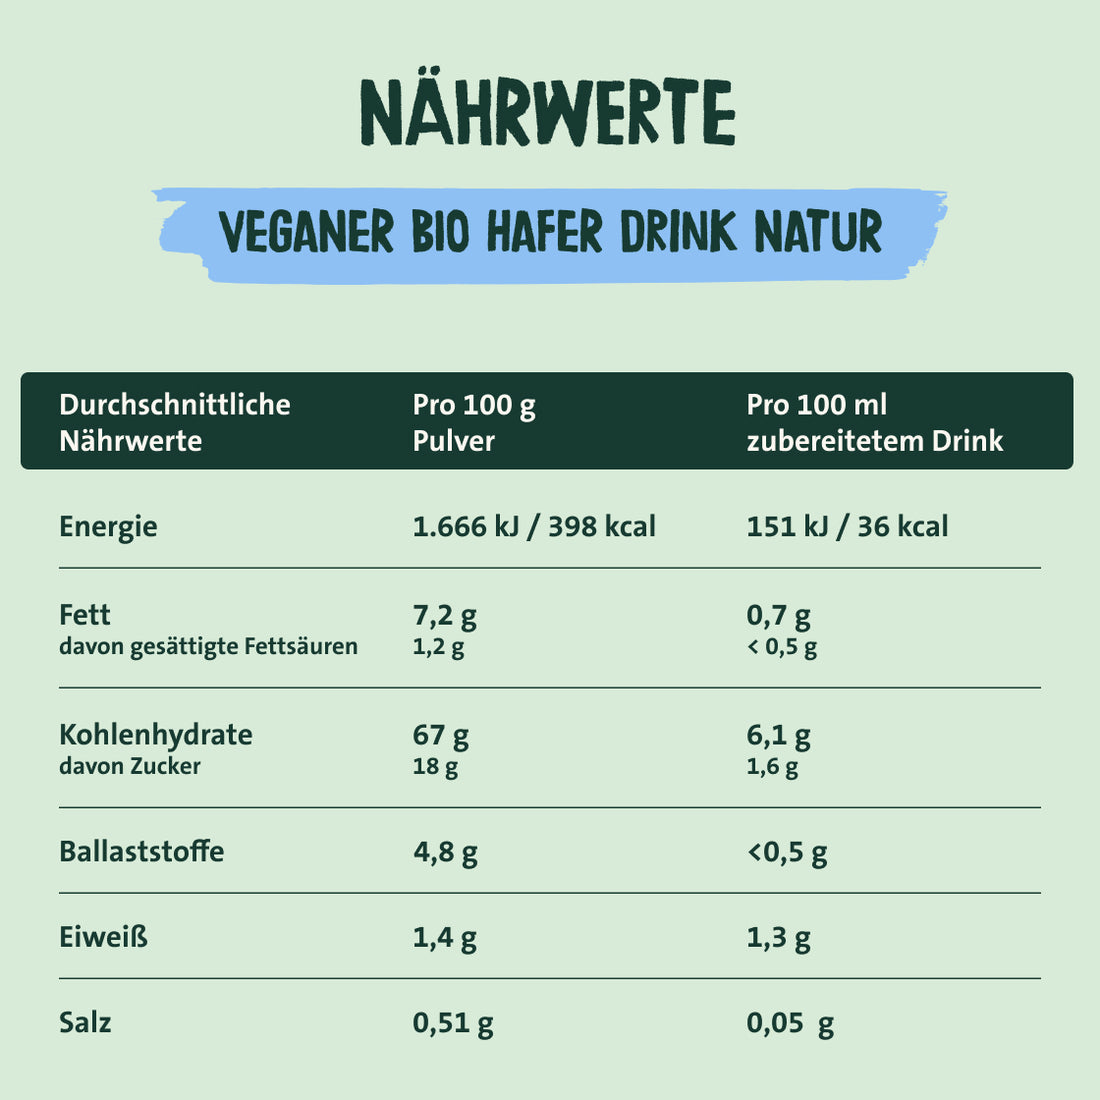 Nährwerte veganer Bio Hafer Drink Natur